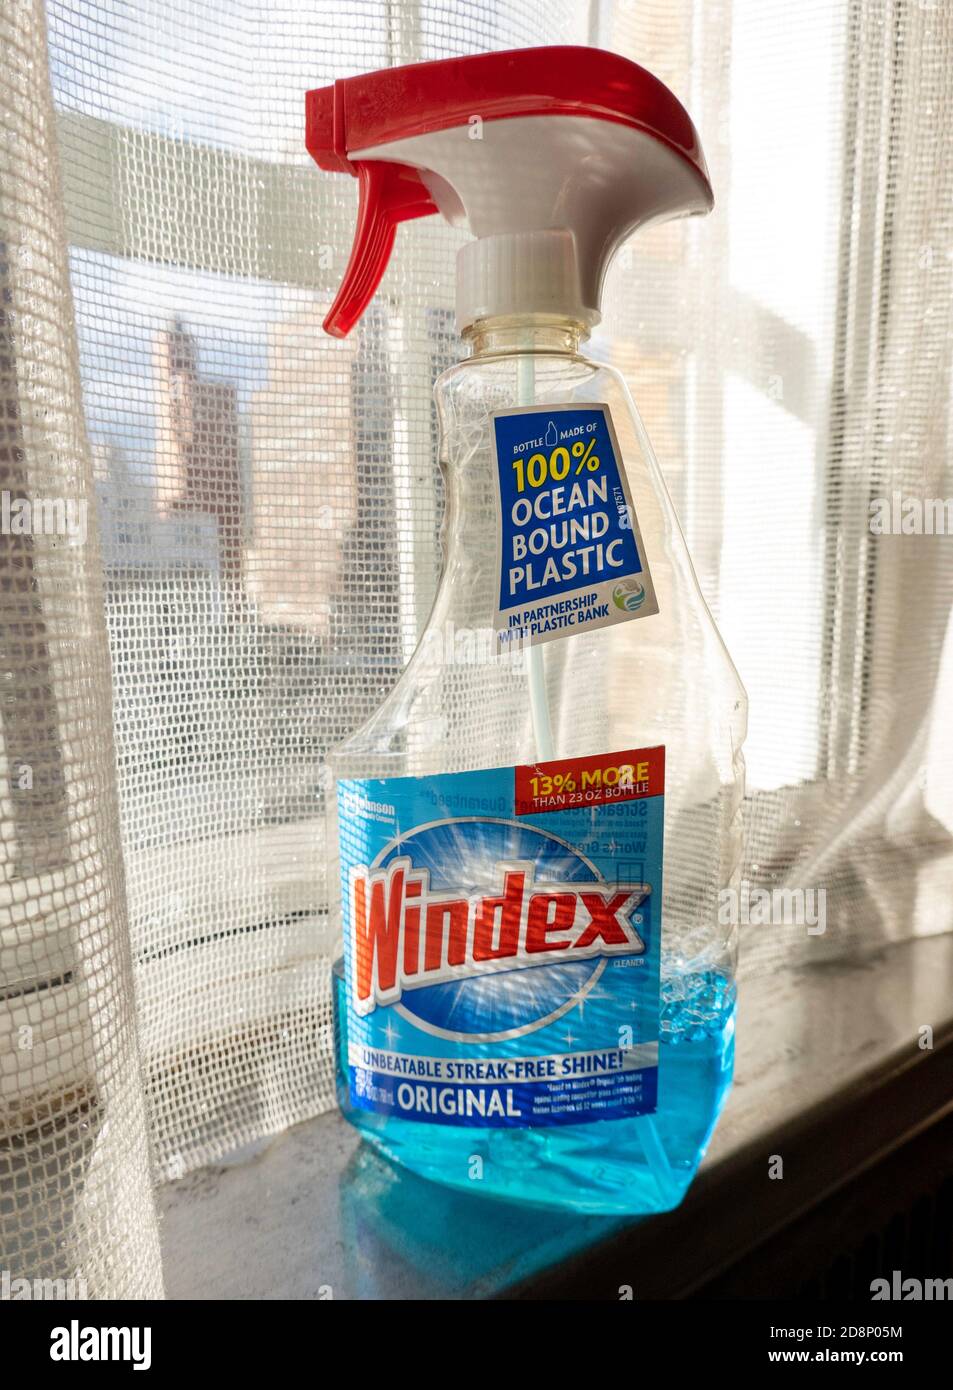 SC Johnson verfügt jetzt über 100% Ozean-gebundene Kunststoff-Trigger-Flaschen für Windex Glasreiniger, USA Stockfoto